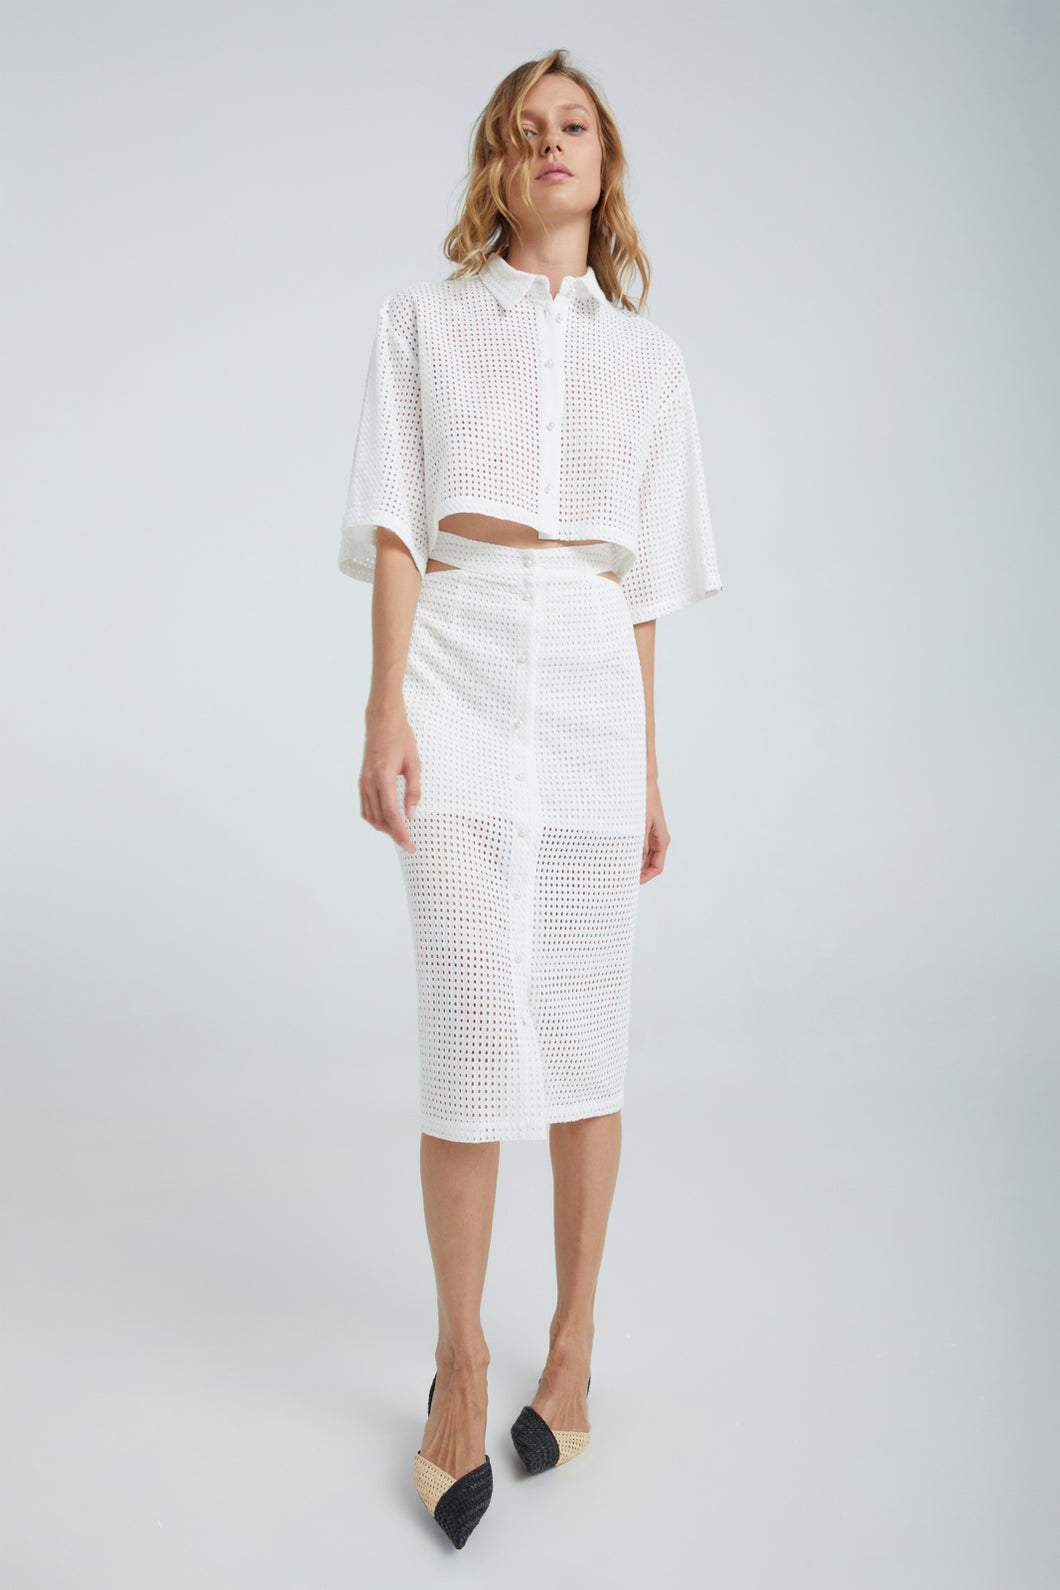 Celine Skirt (White)